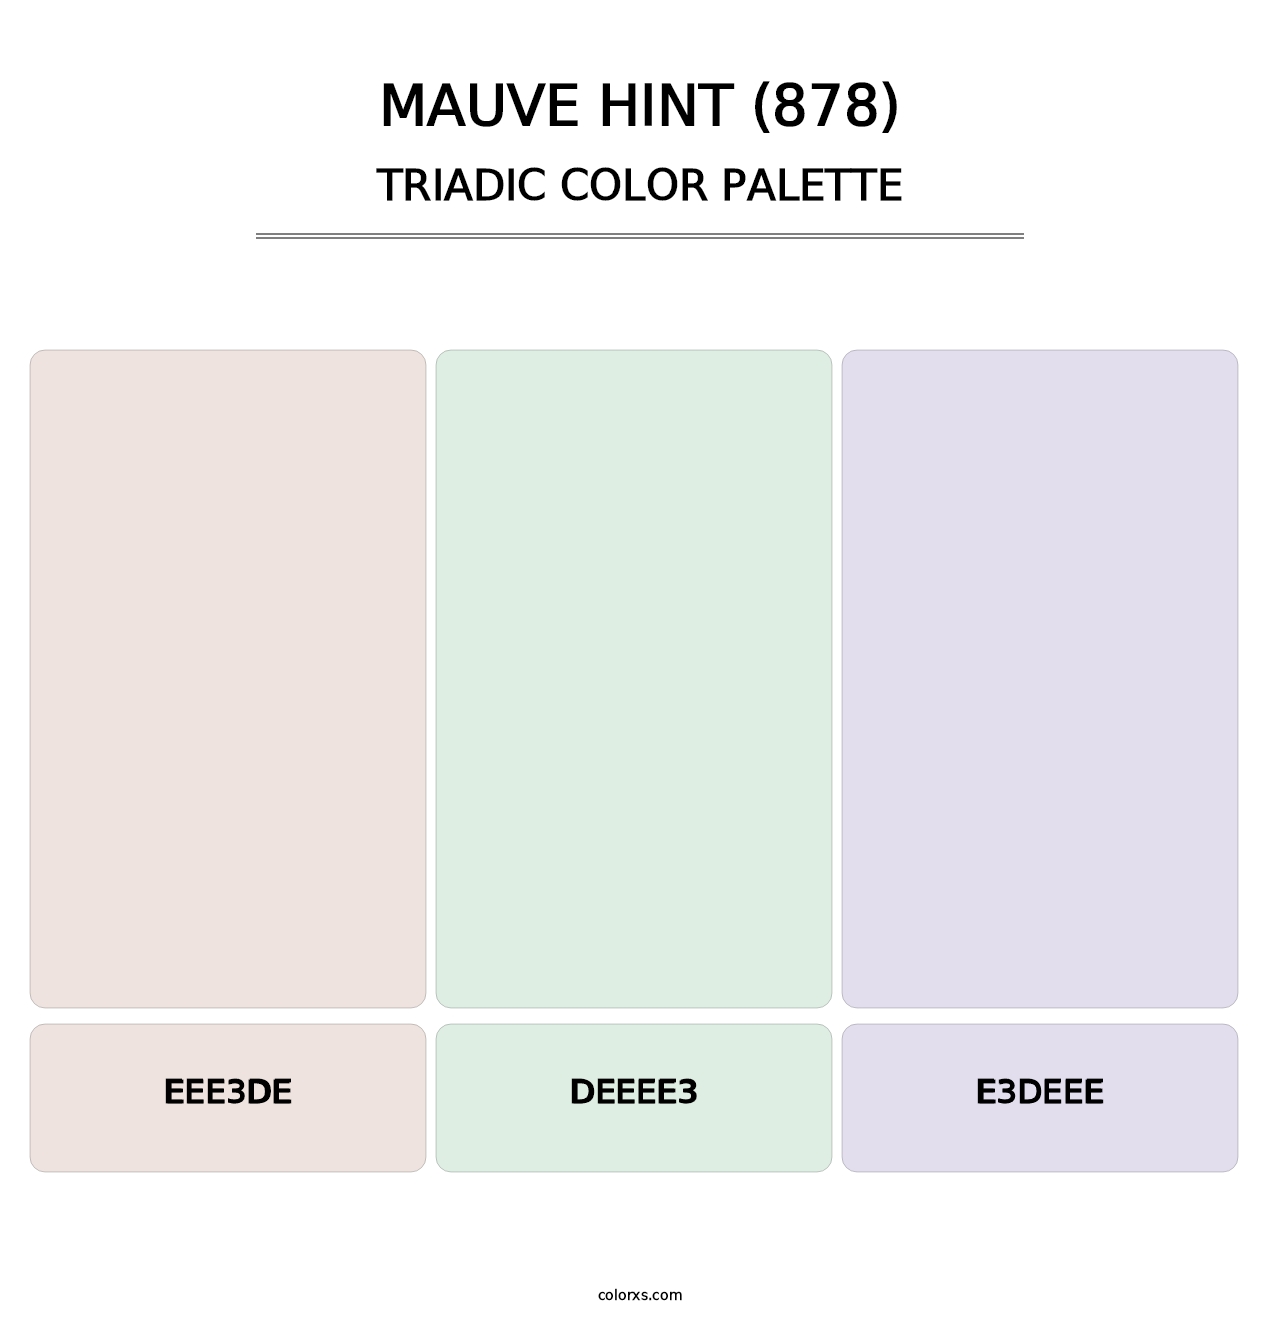 Mauve Hint (878) - Triadic Color Palette